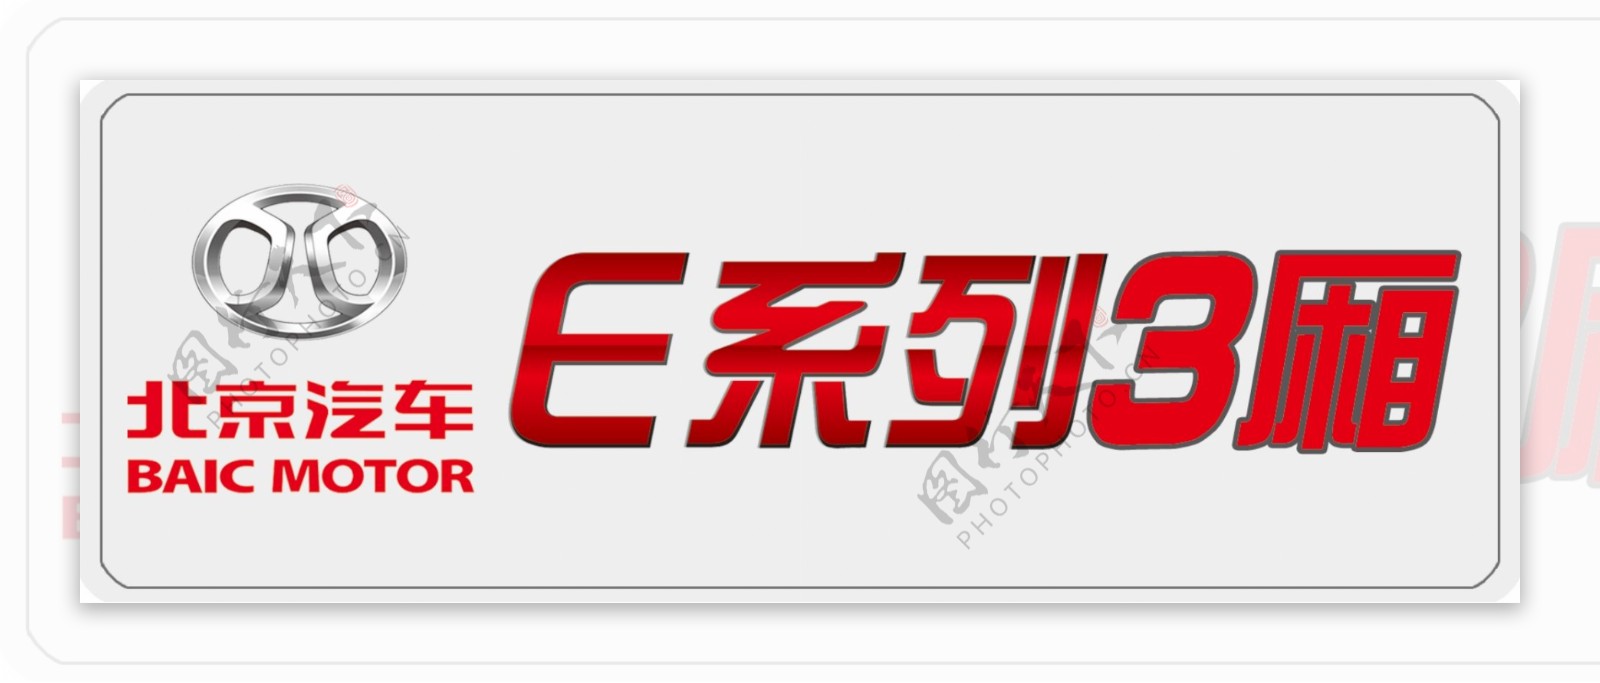 北京汽车E系列3厢轿图片